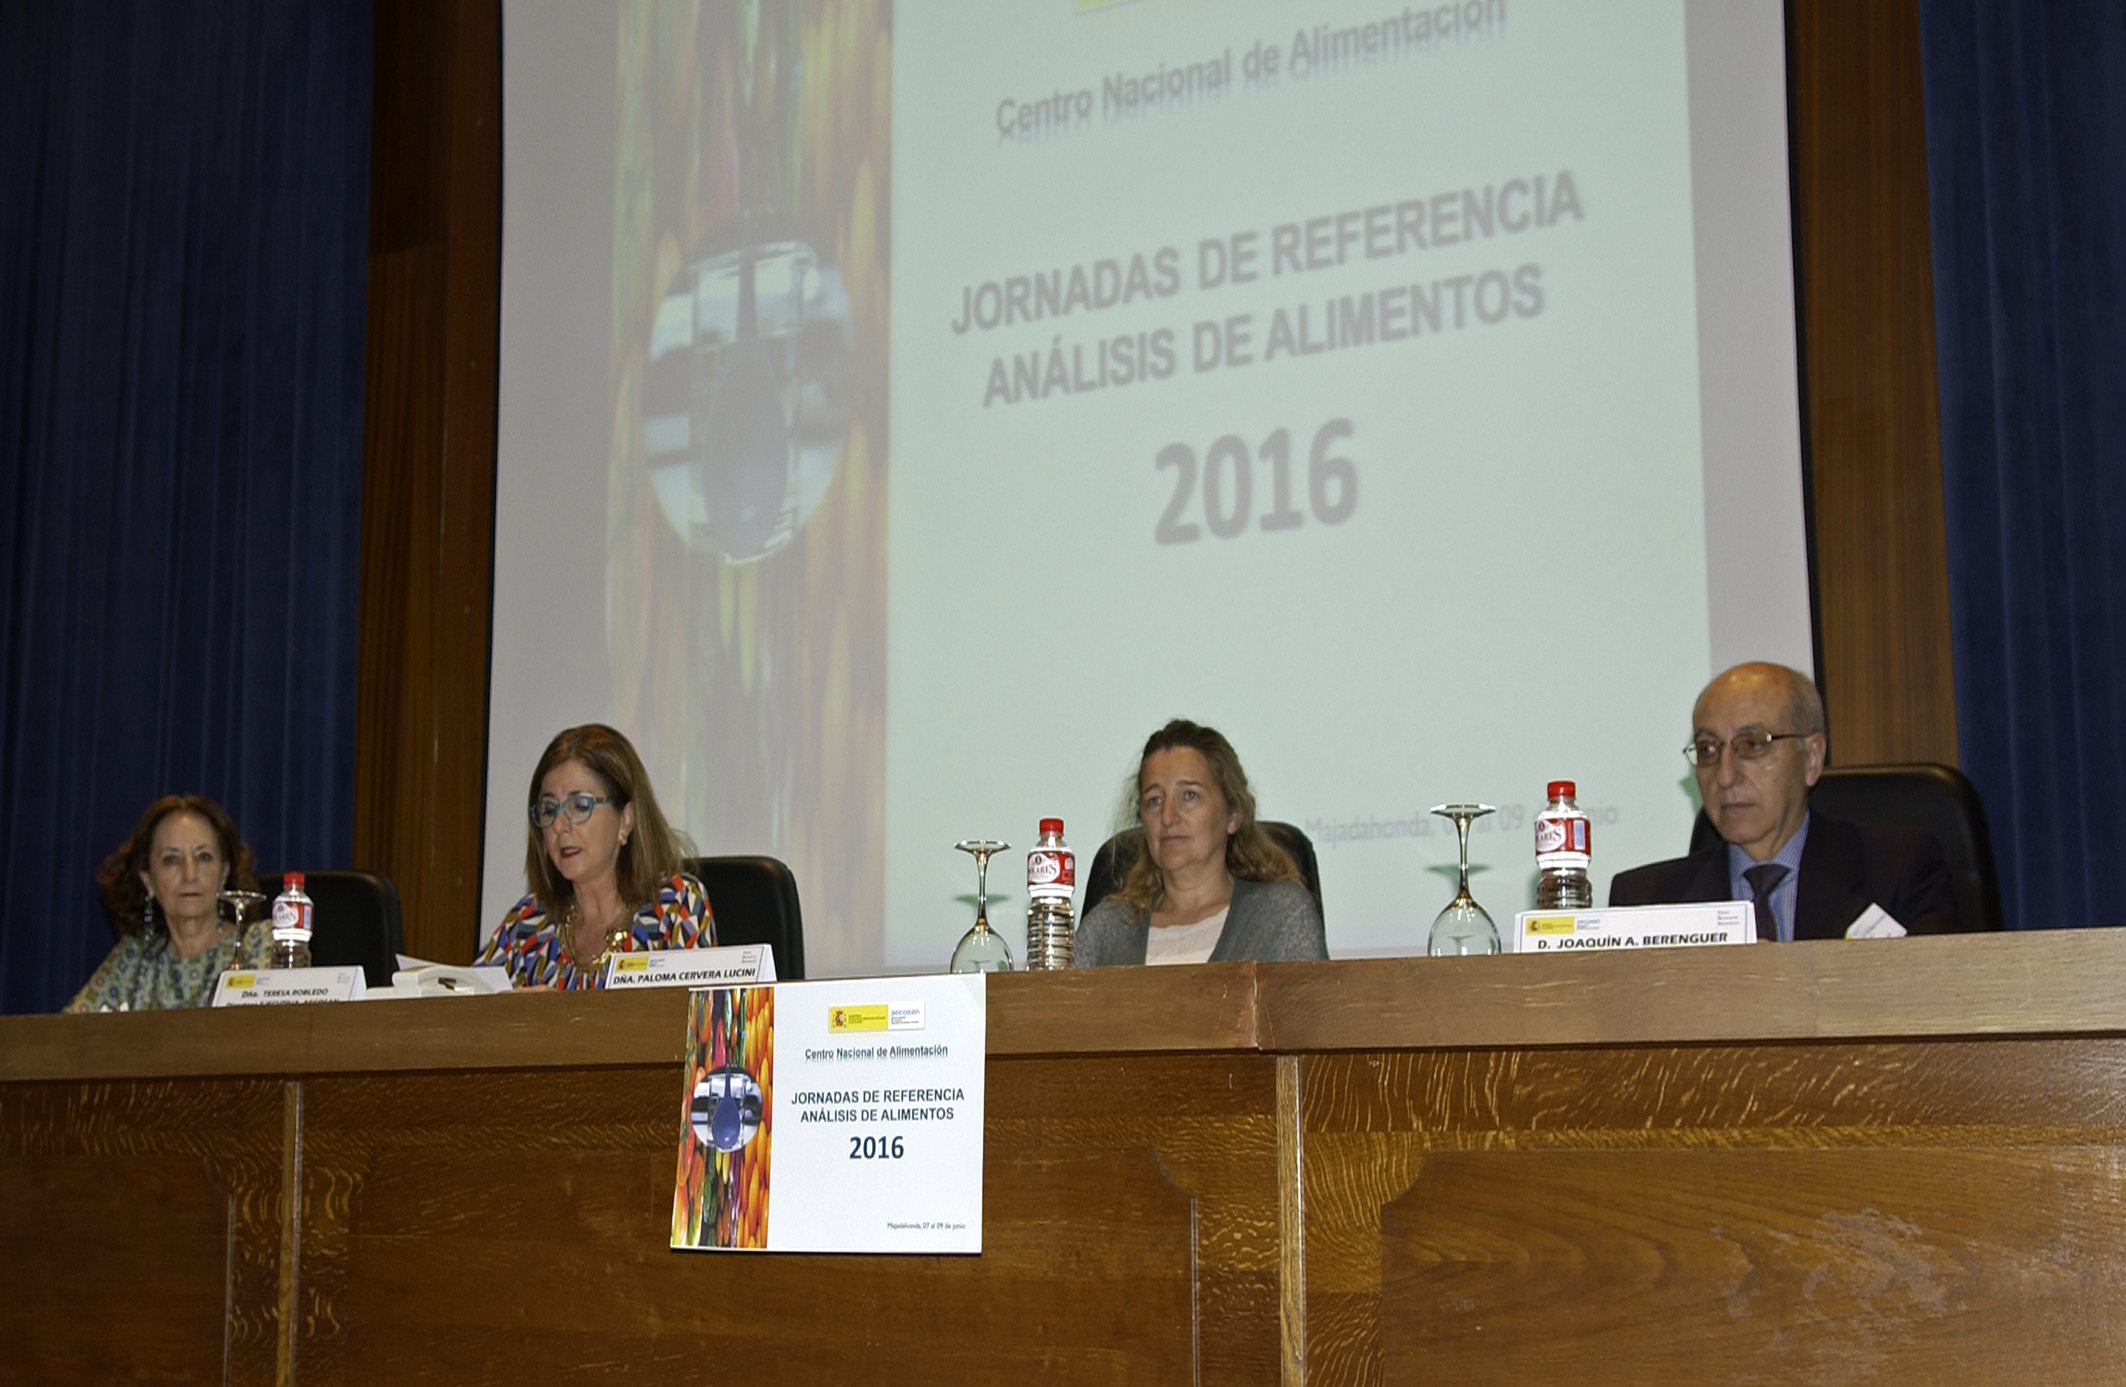 Inauguración de las Jornadas de Referencia 2016-Análisis de Alimentos en CNA